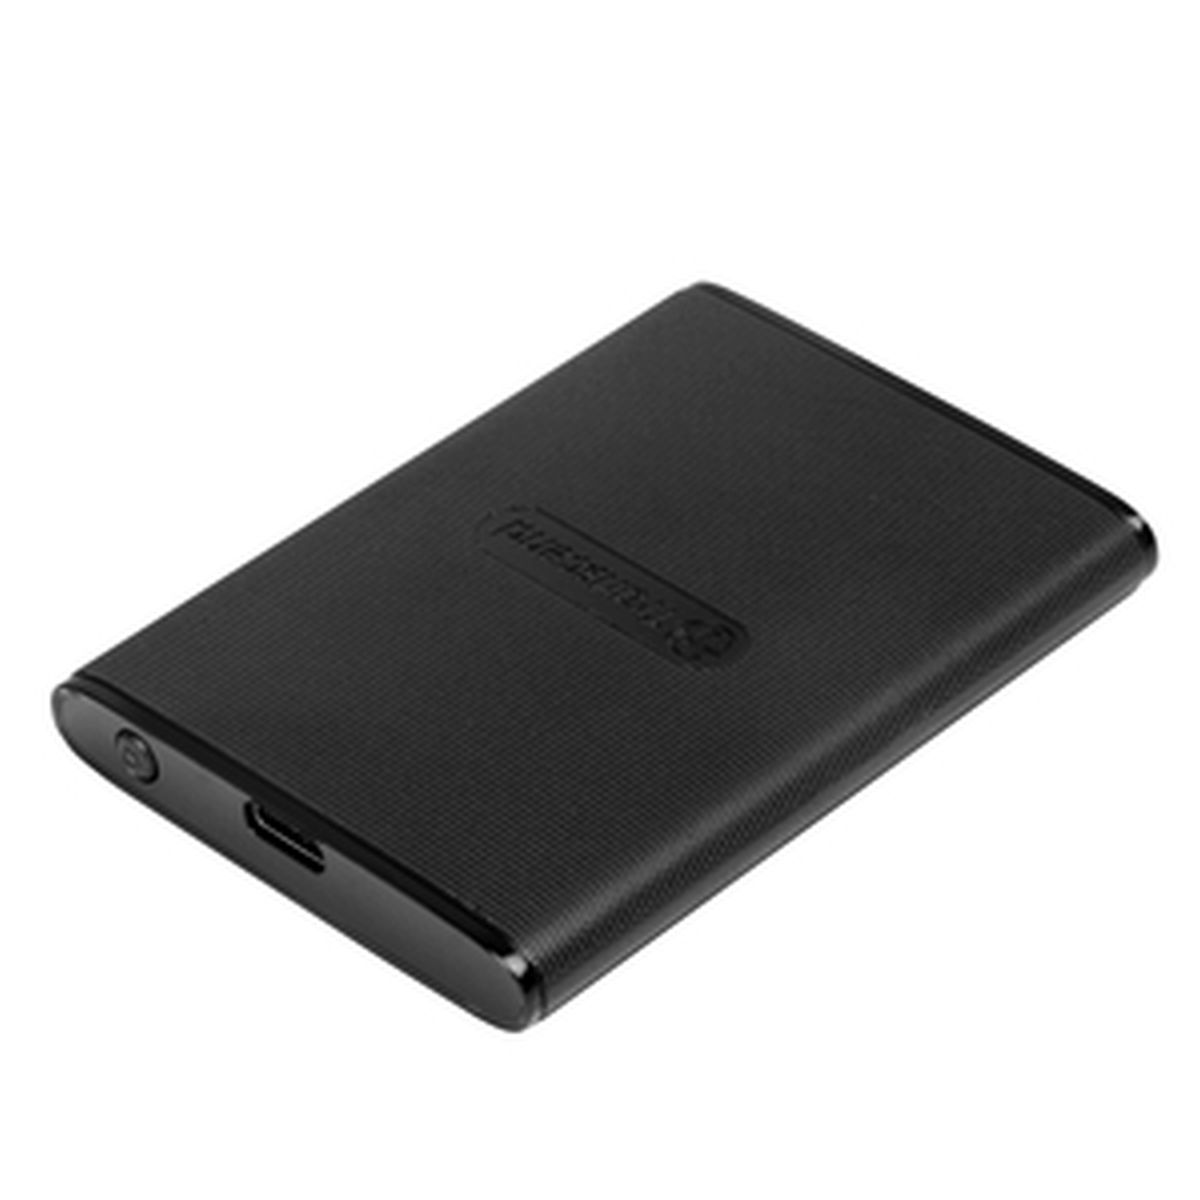 Transcend ESD270C Portable SSD 1 TB